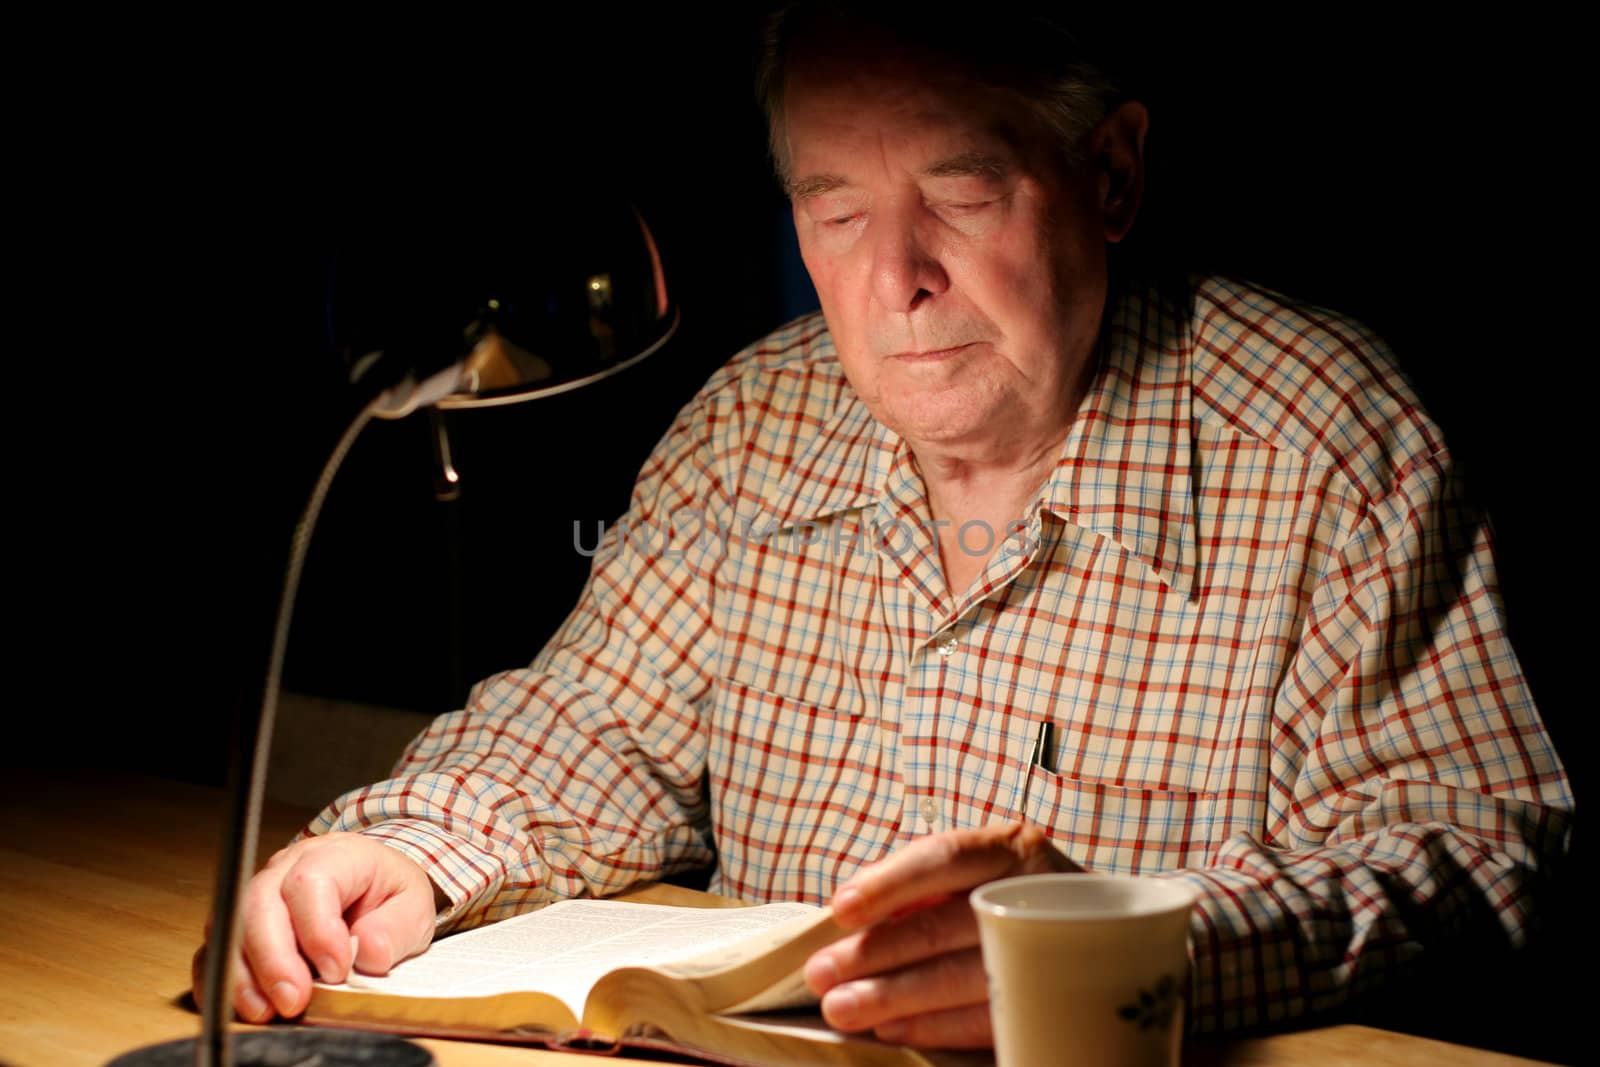 ELderly man reading Bible  at night by jarenwicklund